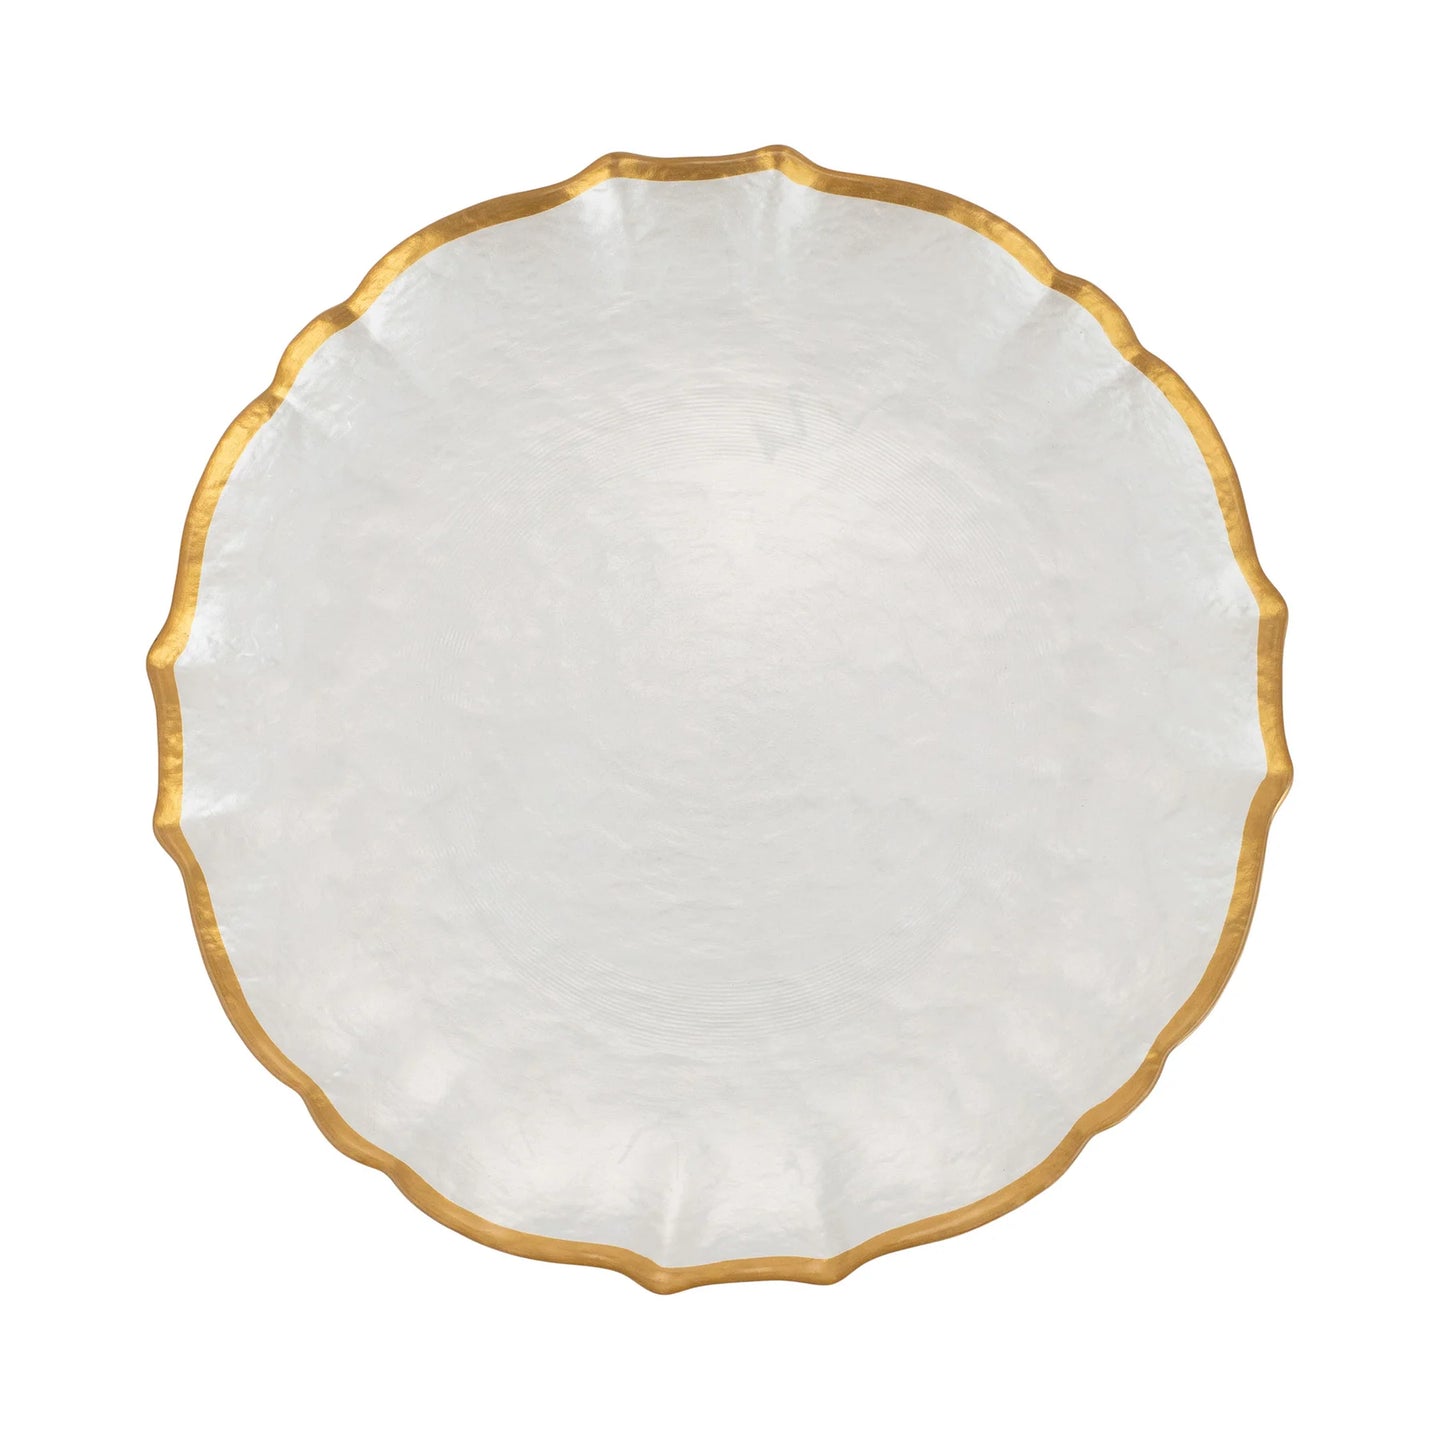 Baroque Glass Dinner Plates White S/4